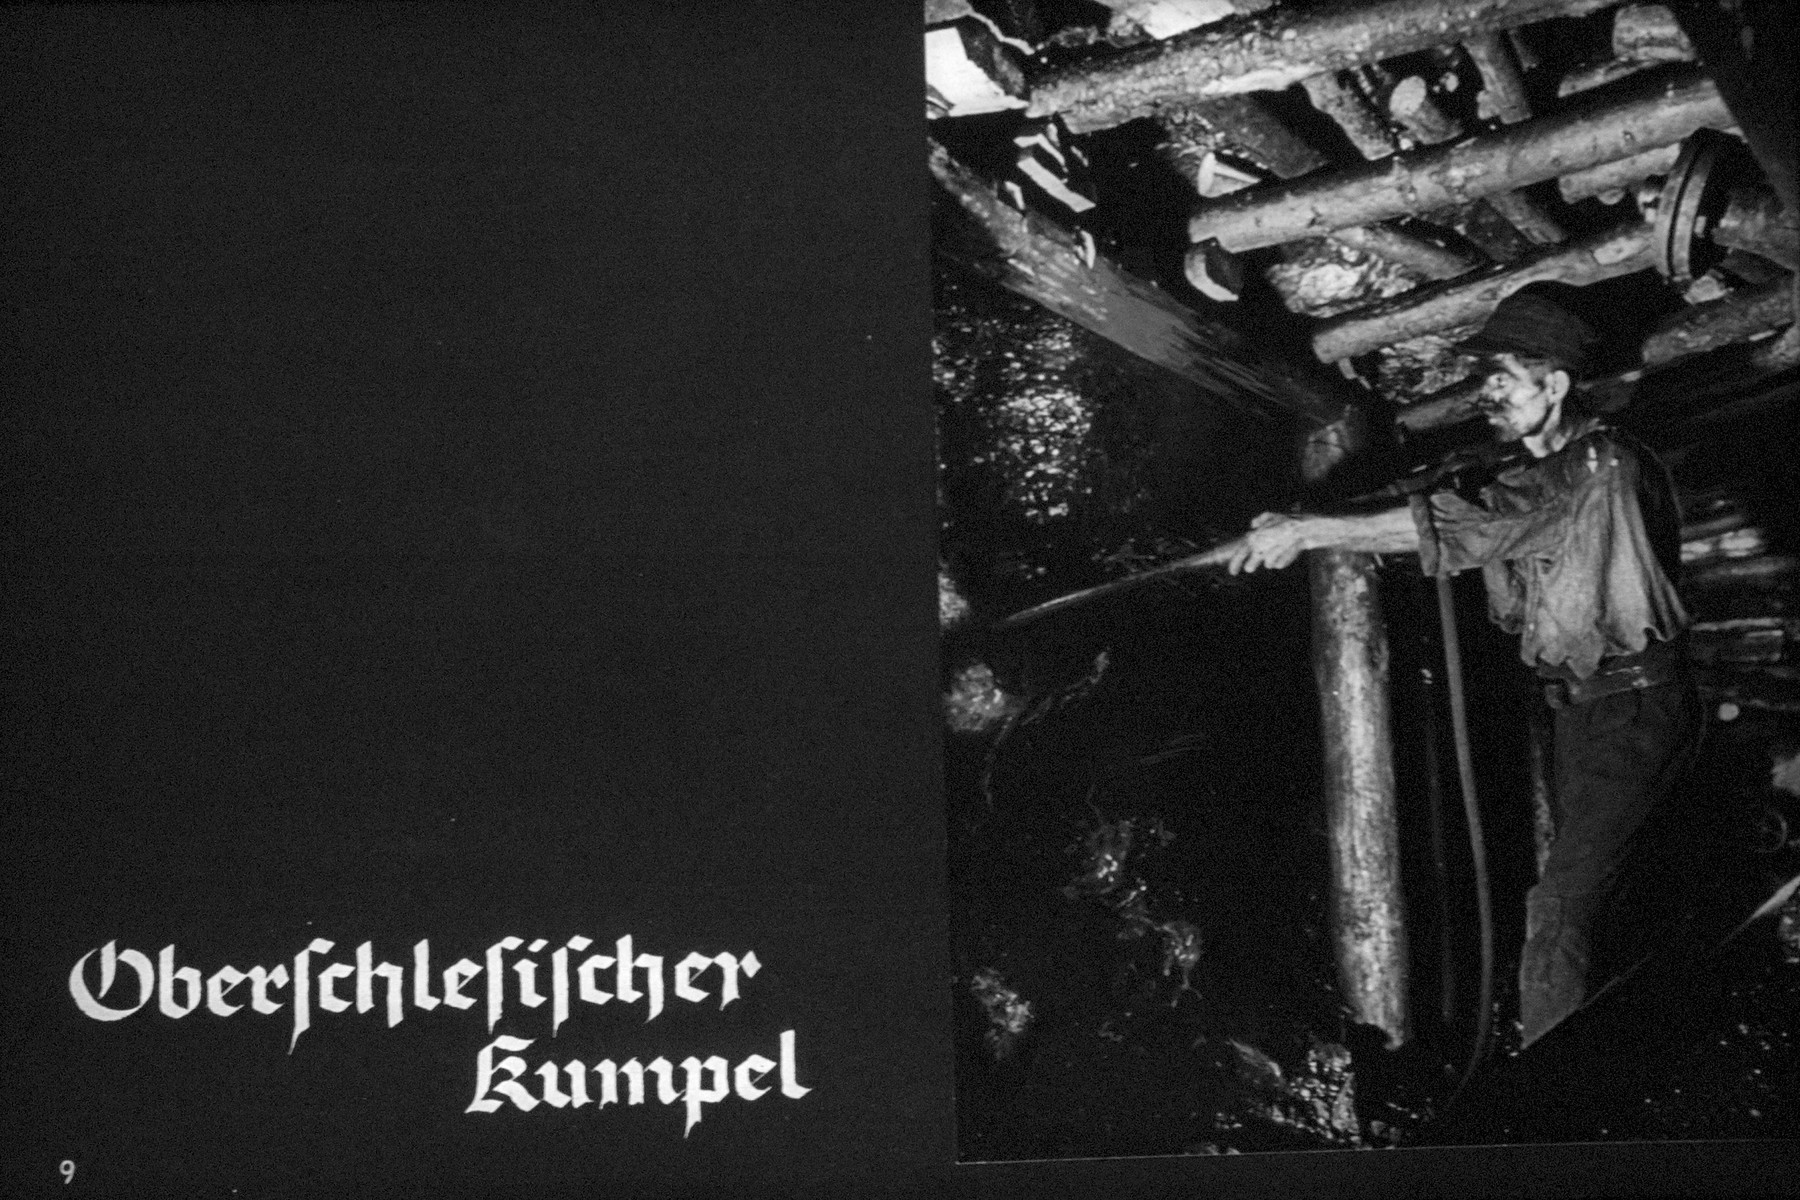 11th Nazi propaganda slide from Hitler Youth educational material titled "Border Land Upper Silesia."

Oberschlesischer kumpel
//
Oberschlesischer buddy